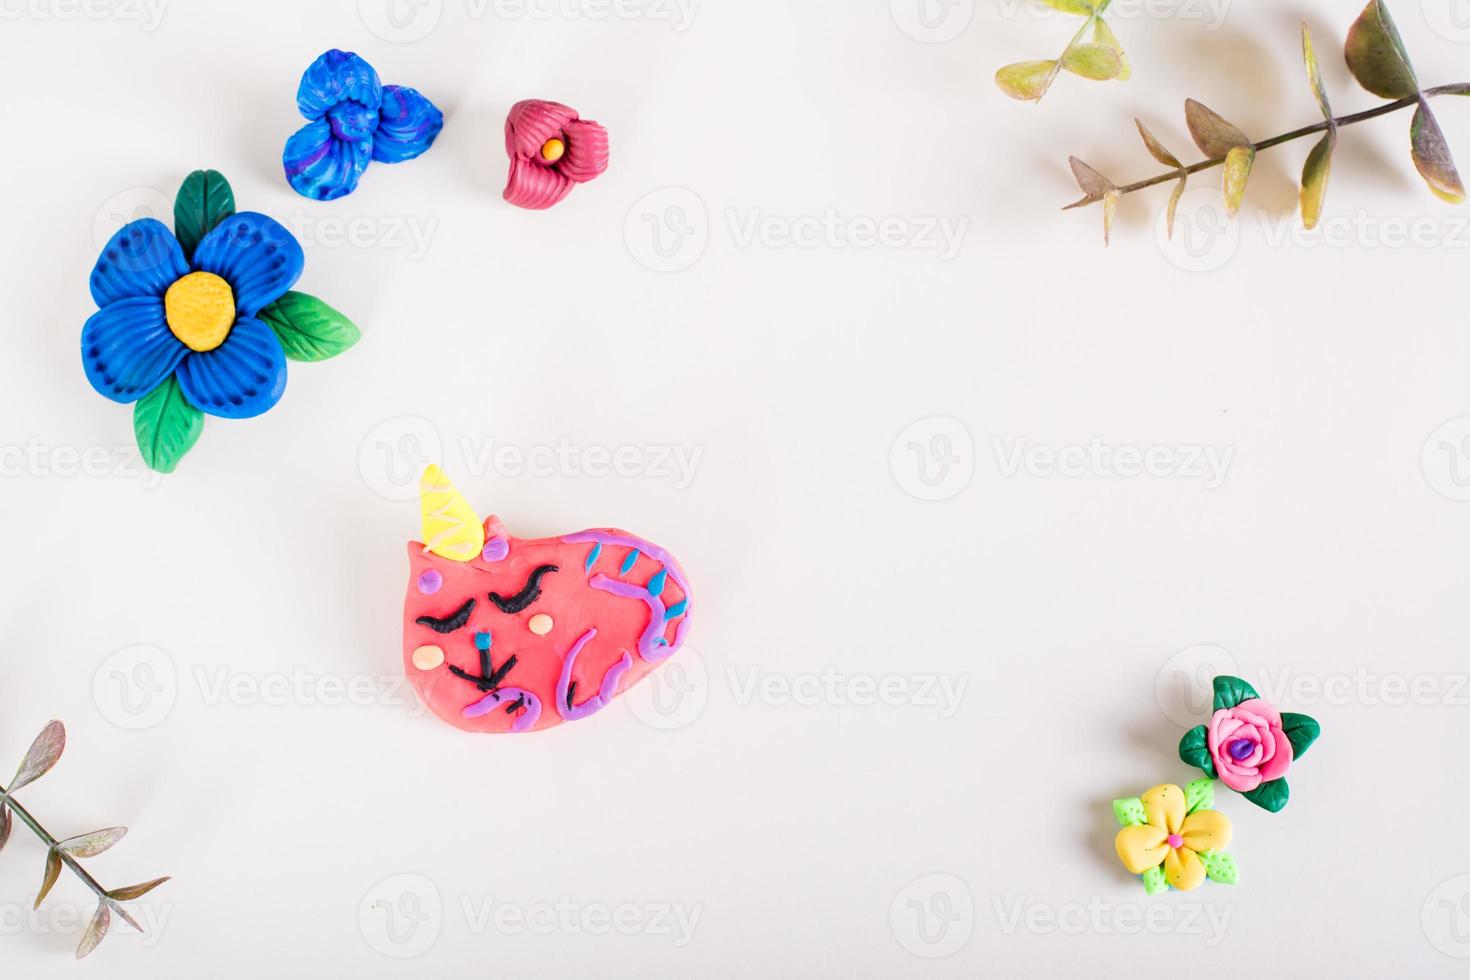 broche na forma de um gato e flores feitas de argila de polímero em um fundo claro. decoração artesanal. foto